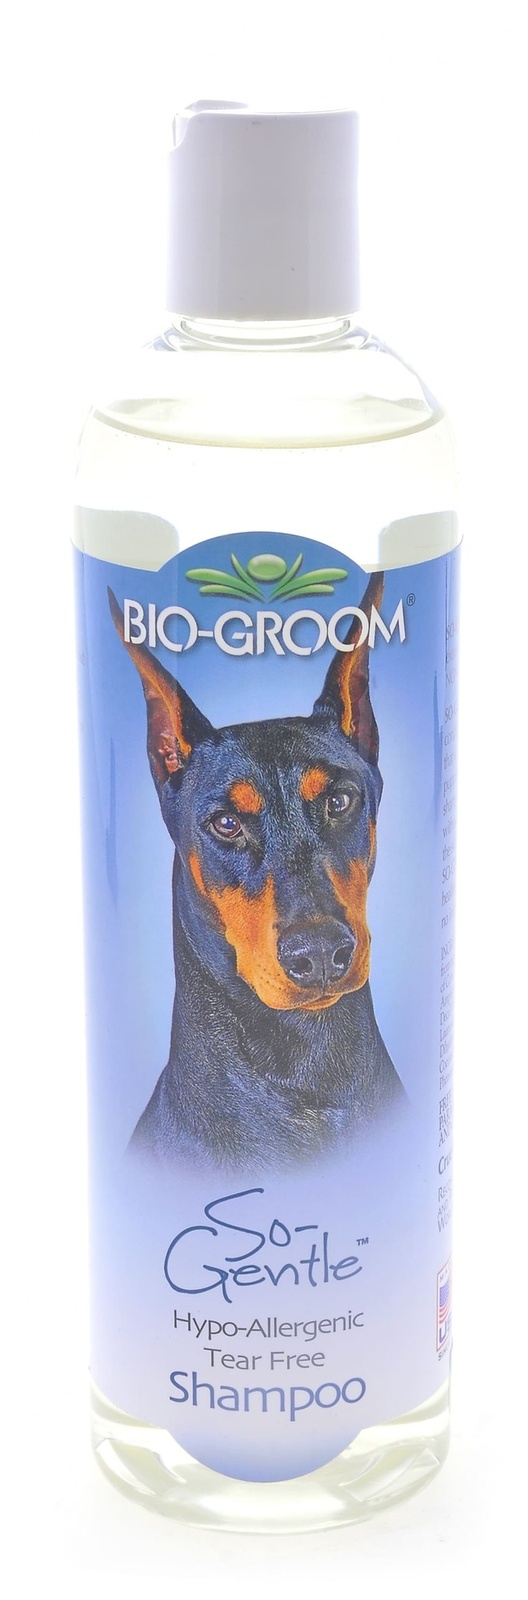 Biogroom Biogroom шампунь гипоаллергенный, концентрат 1:2, 1 литр готового шампуня (355 г)